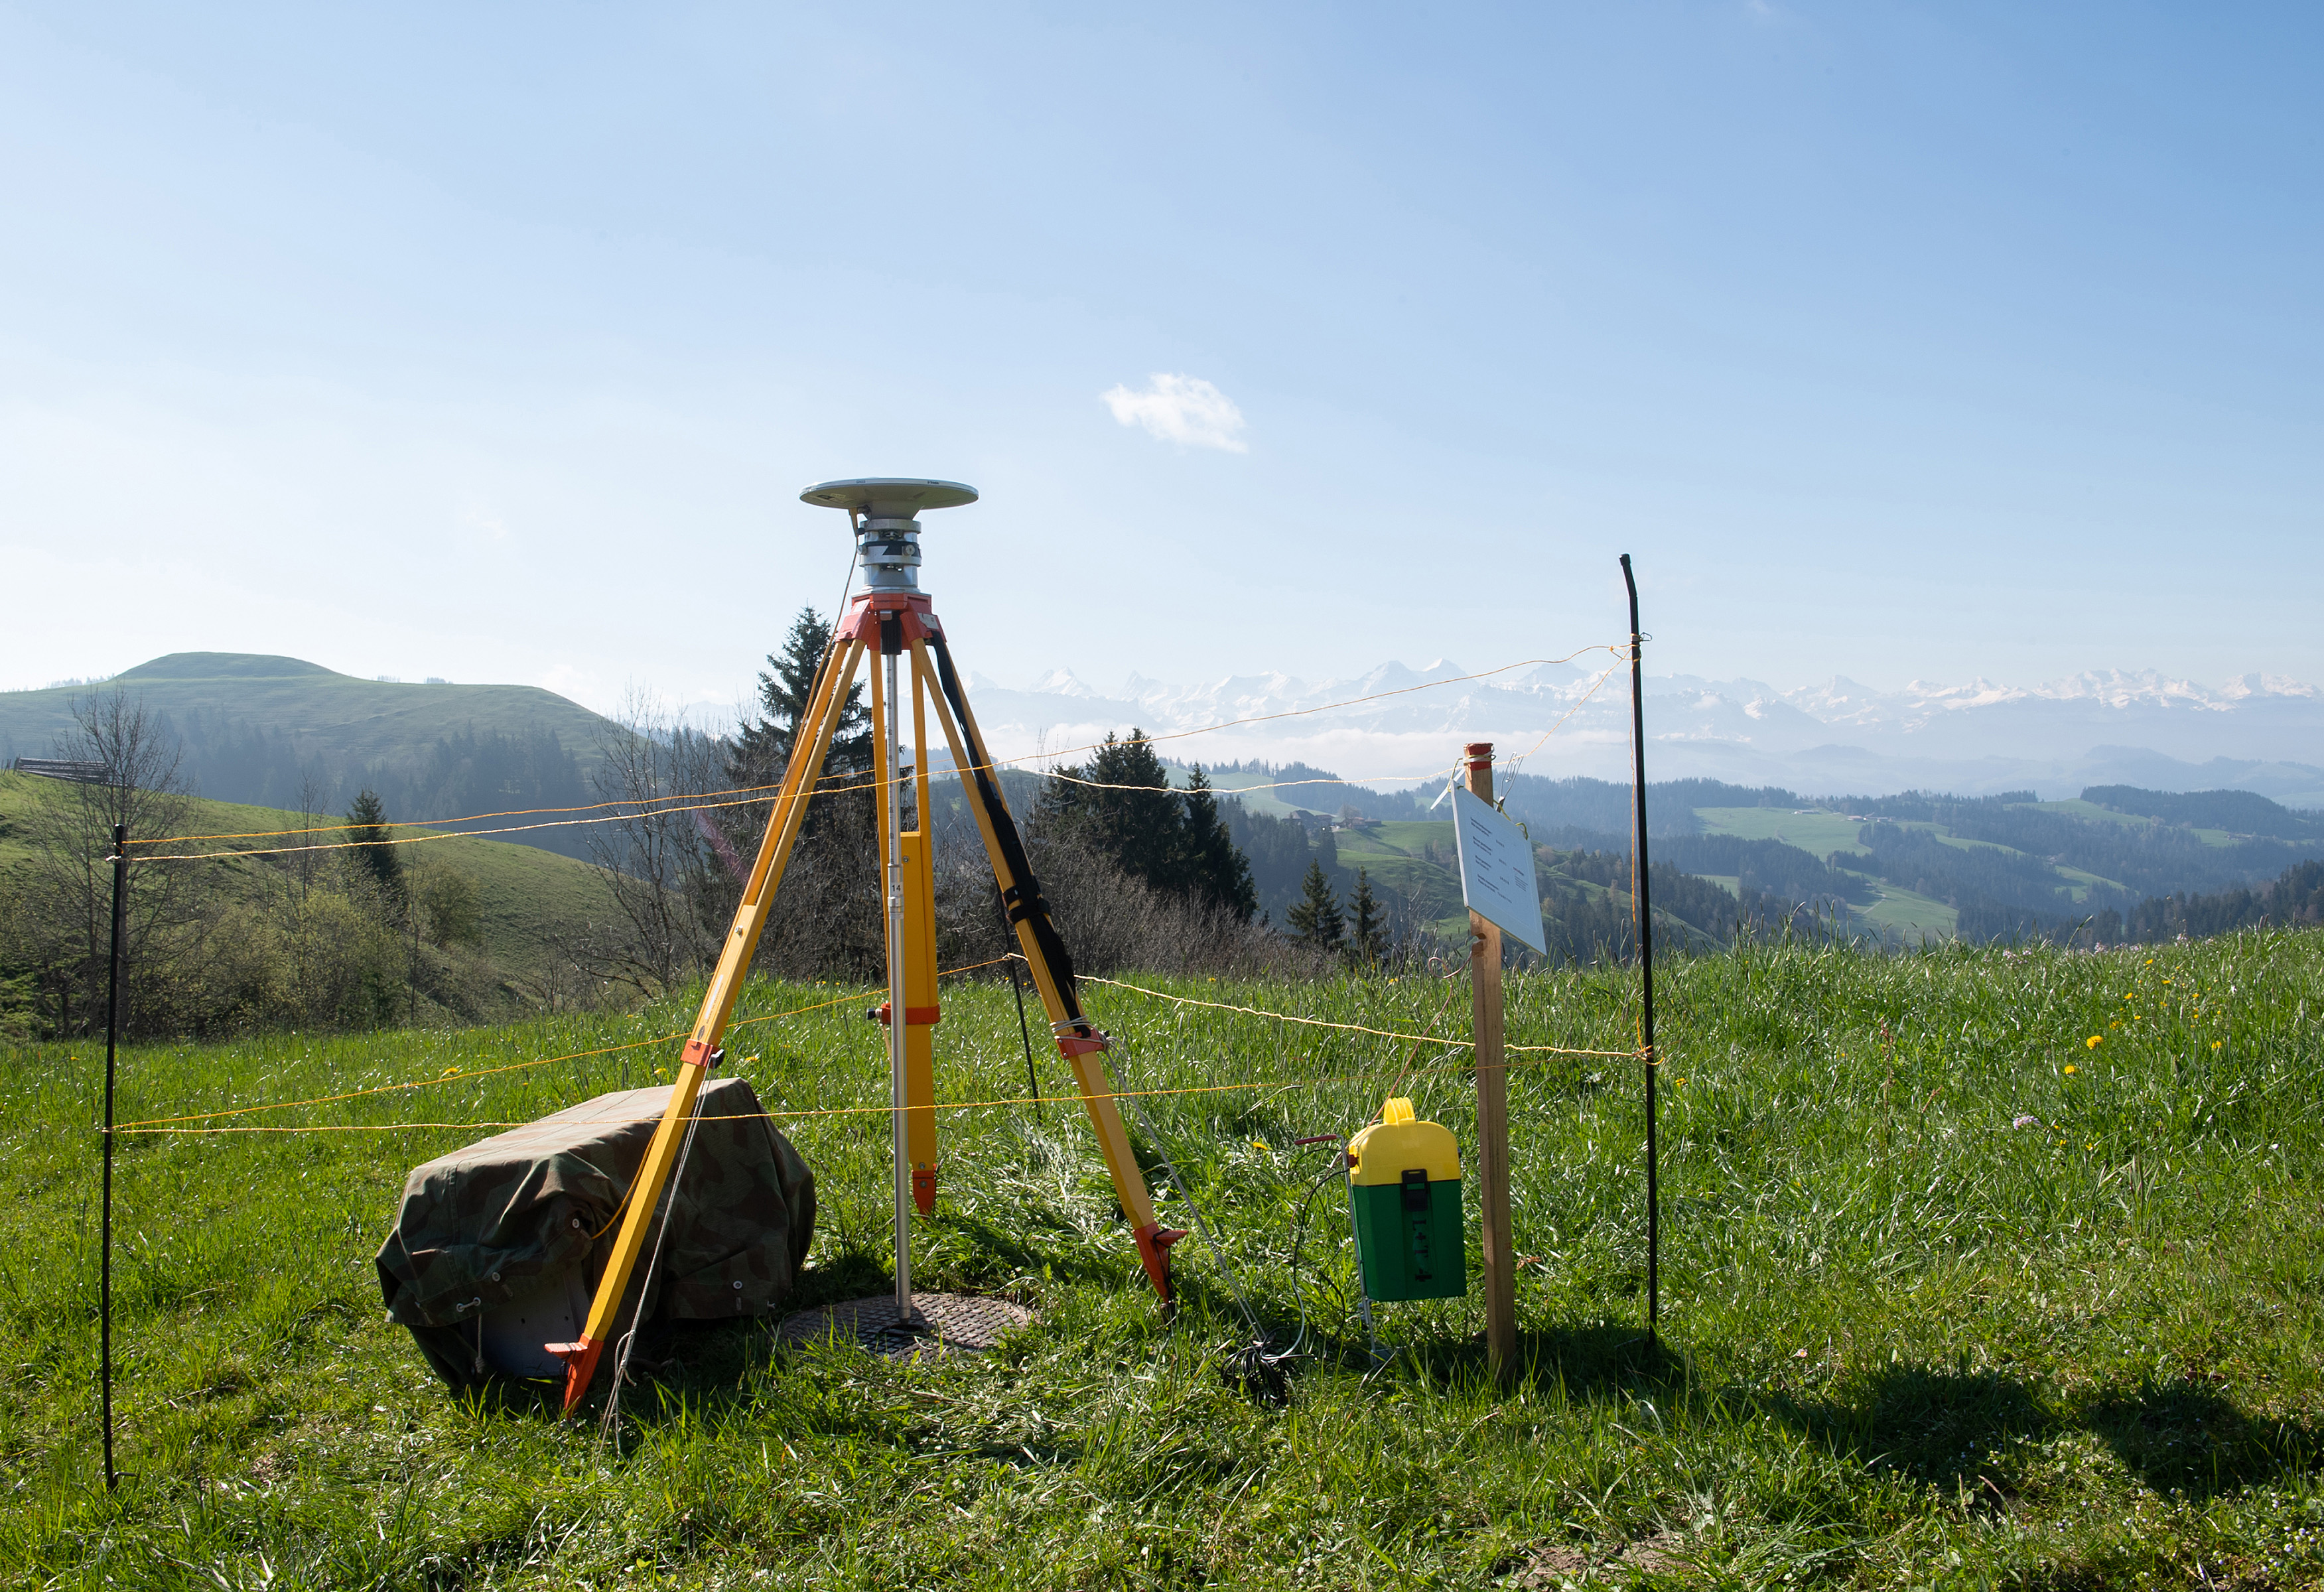 Während 48 Stunden empfängt die GNSS-Antenne Satellitensignale, um daraus die genaue Position eines Fixpunktes zu berechnen. swisstopo betreibt ein Netz aus 220 Fixpunkten in der ganzen Schweiz. Diese werden alle 6 Jahre neu vermessen. Bild: swisstopo